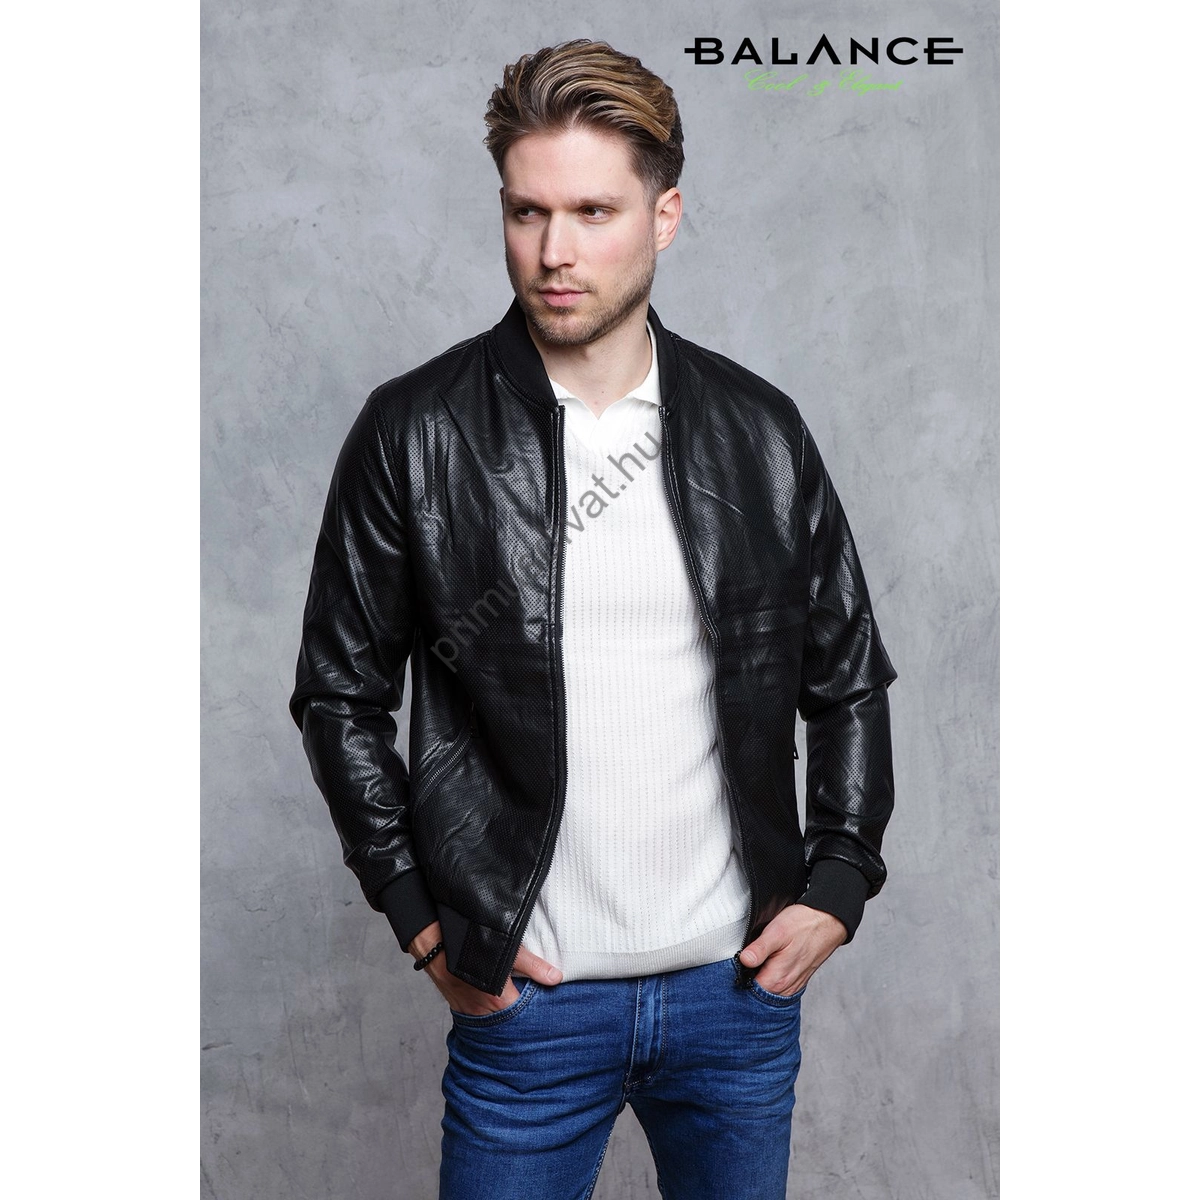 Balance cipzáras, perforált lyukacsos anyagú, slim-fit fazonú fekete textilbőr Perf dzseki, cipzáras zsebekkel